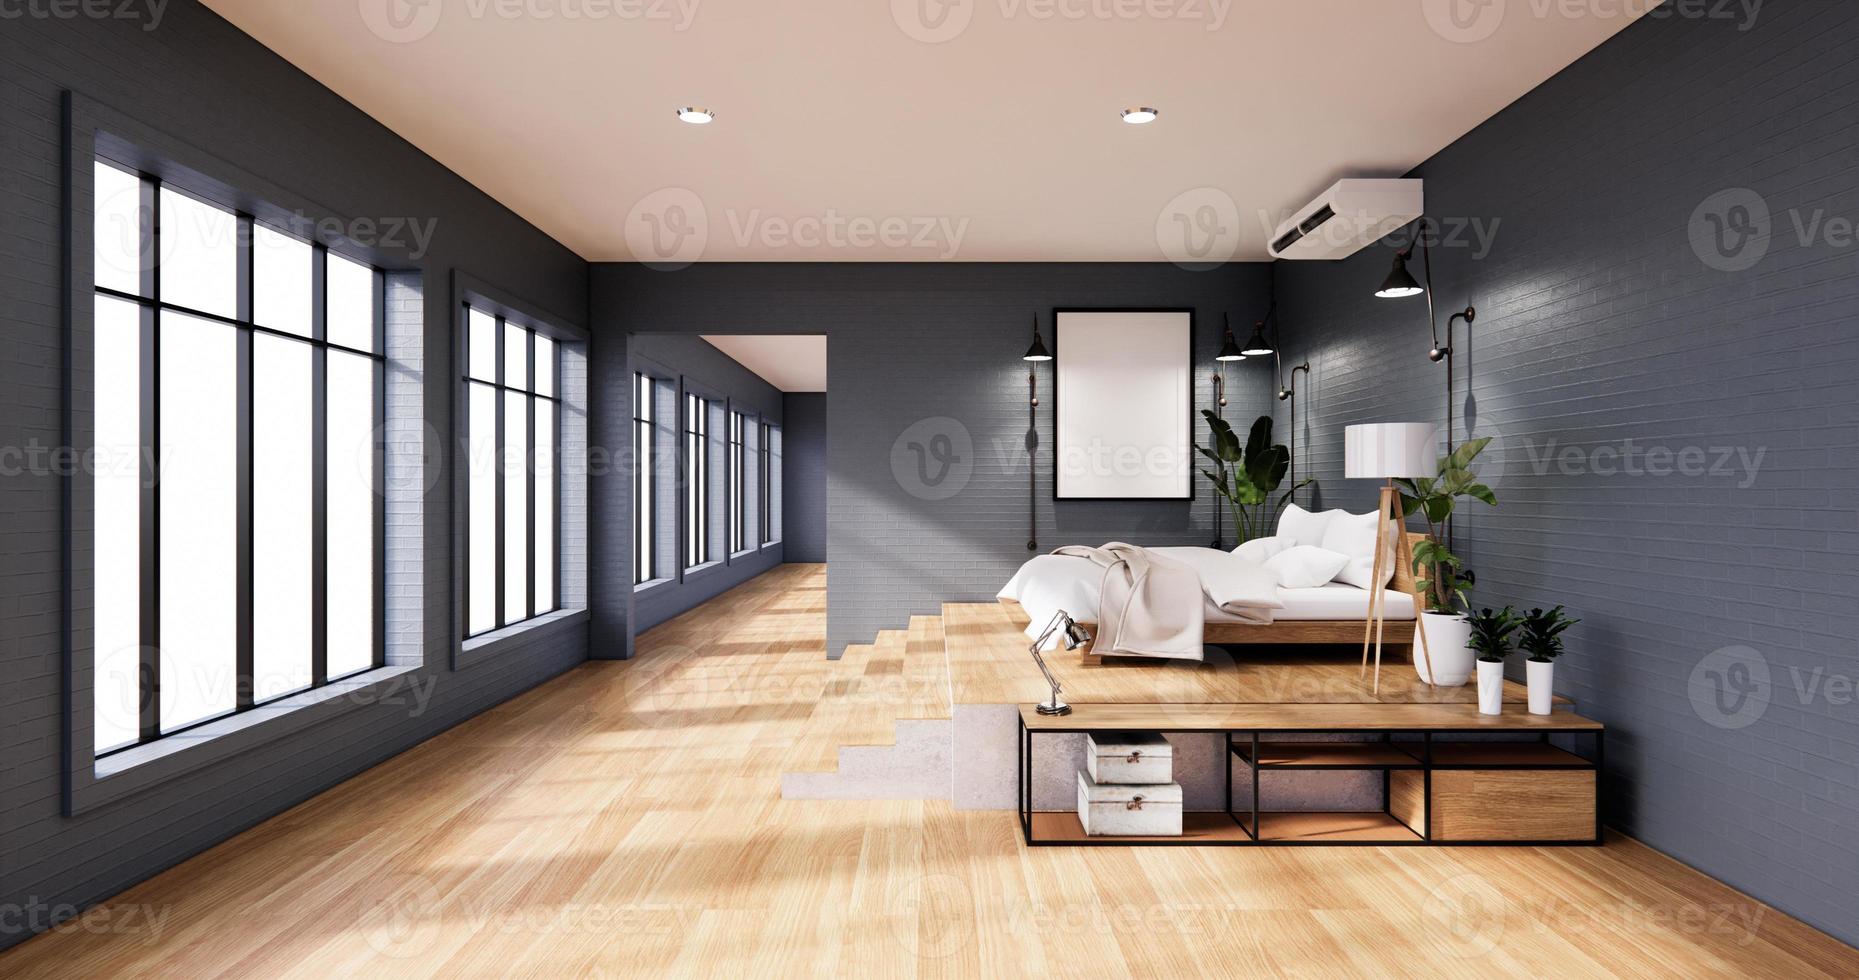 Interior de dormitorio estilo loft con marco en pared de ladrillo azul. Representación 3d foto